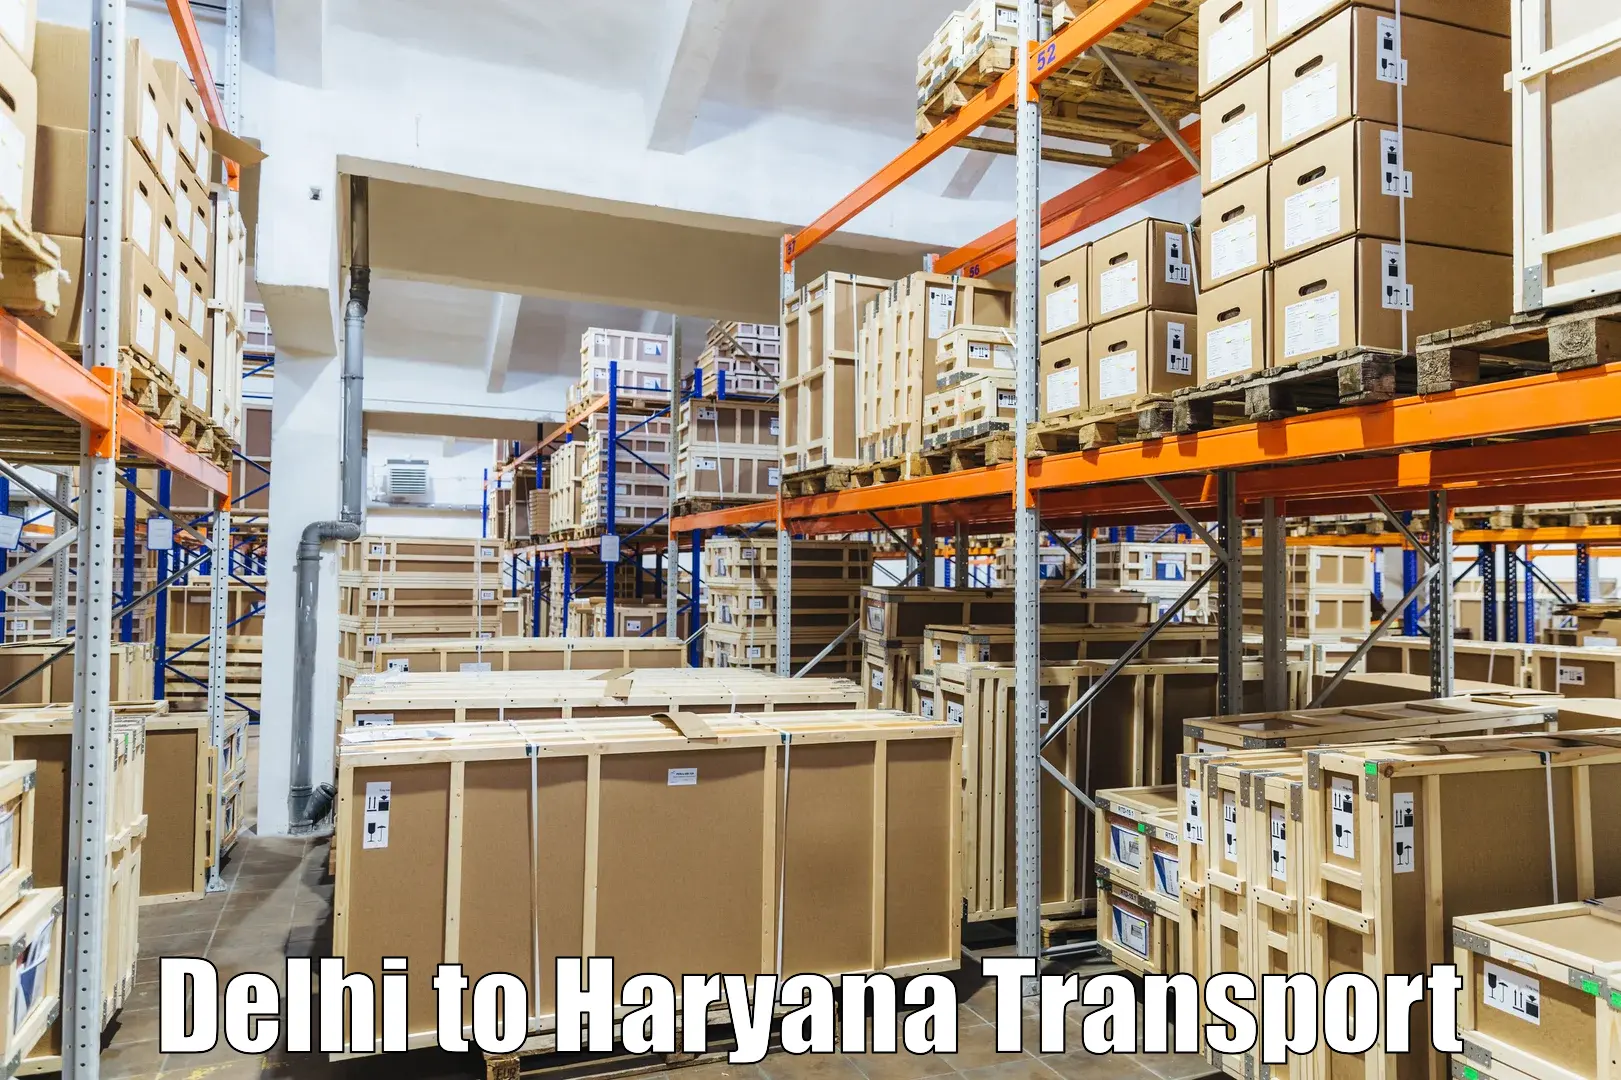 Land transport services Delhi to Karnal